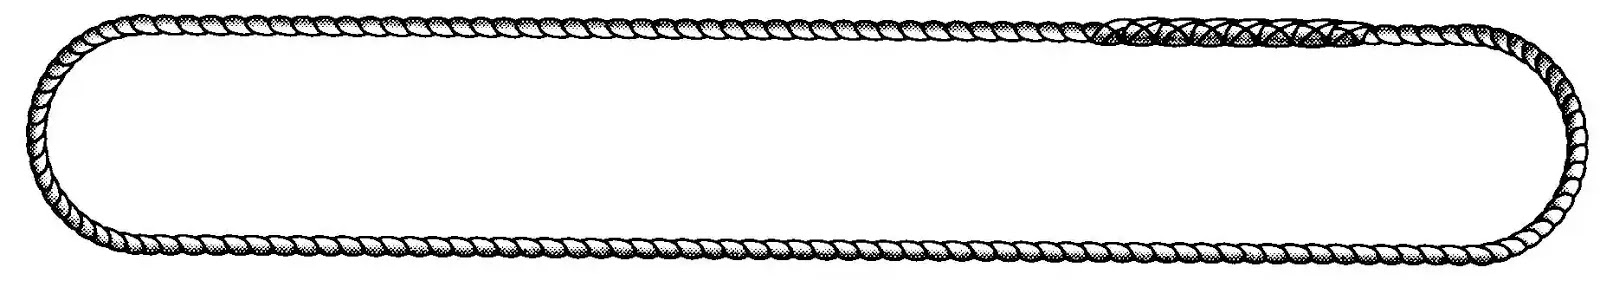 Rope sling